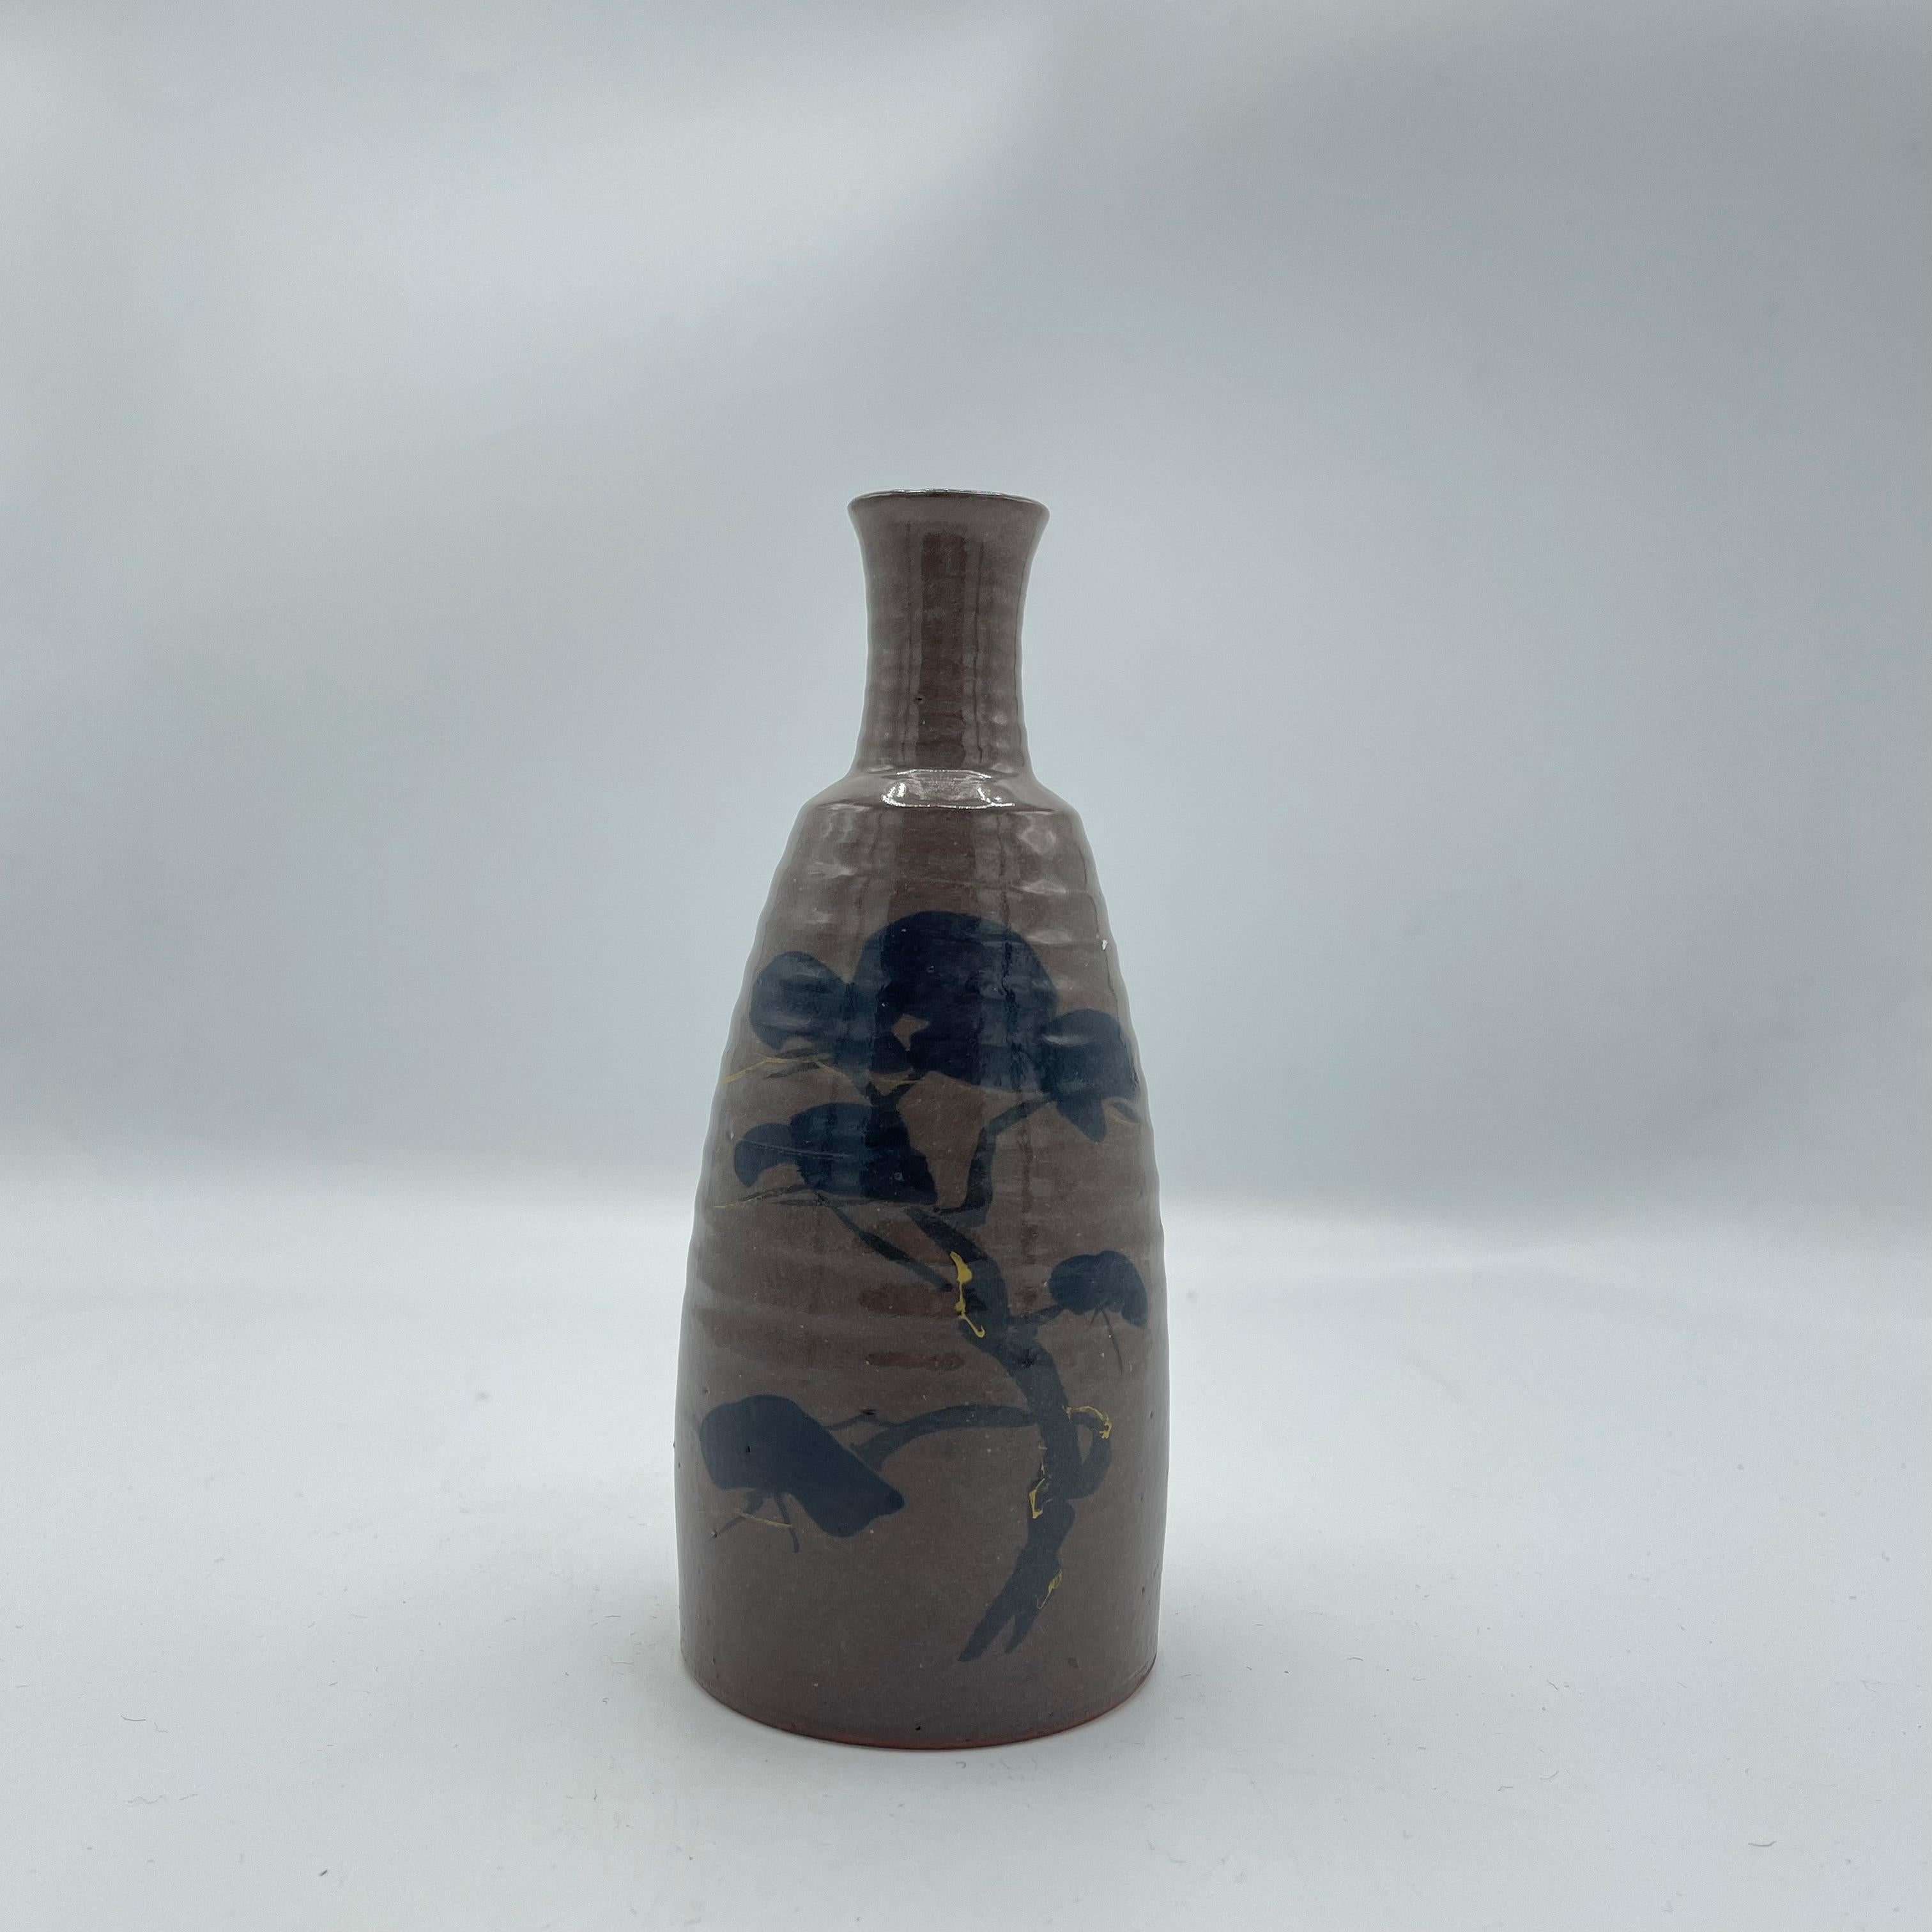 Il s'agit d'une bouteille de saké fabriquée dans les années 1980 à l'époque de Showa.
Il est fabriqué en porcelaine et le motif est peint à la main.
Cette bouteille de saké peut également servir de vase à fleurs. 

Dimensions :
5,5 x 5,5 x H13 cm